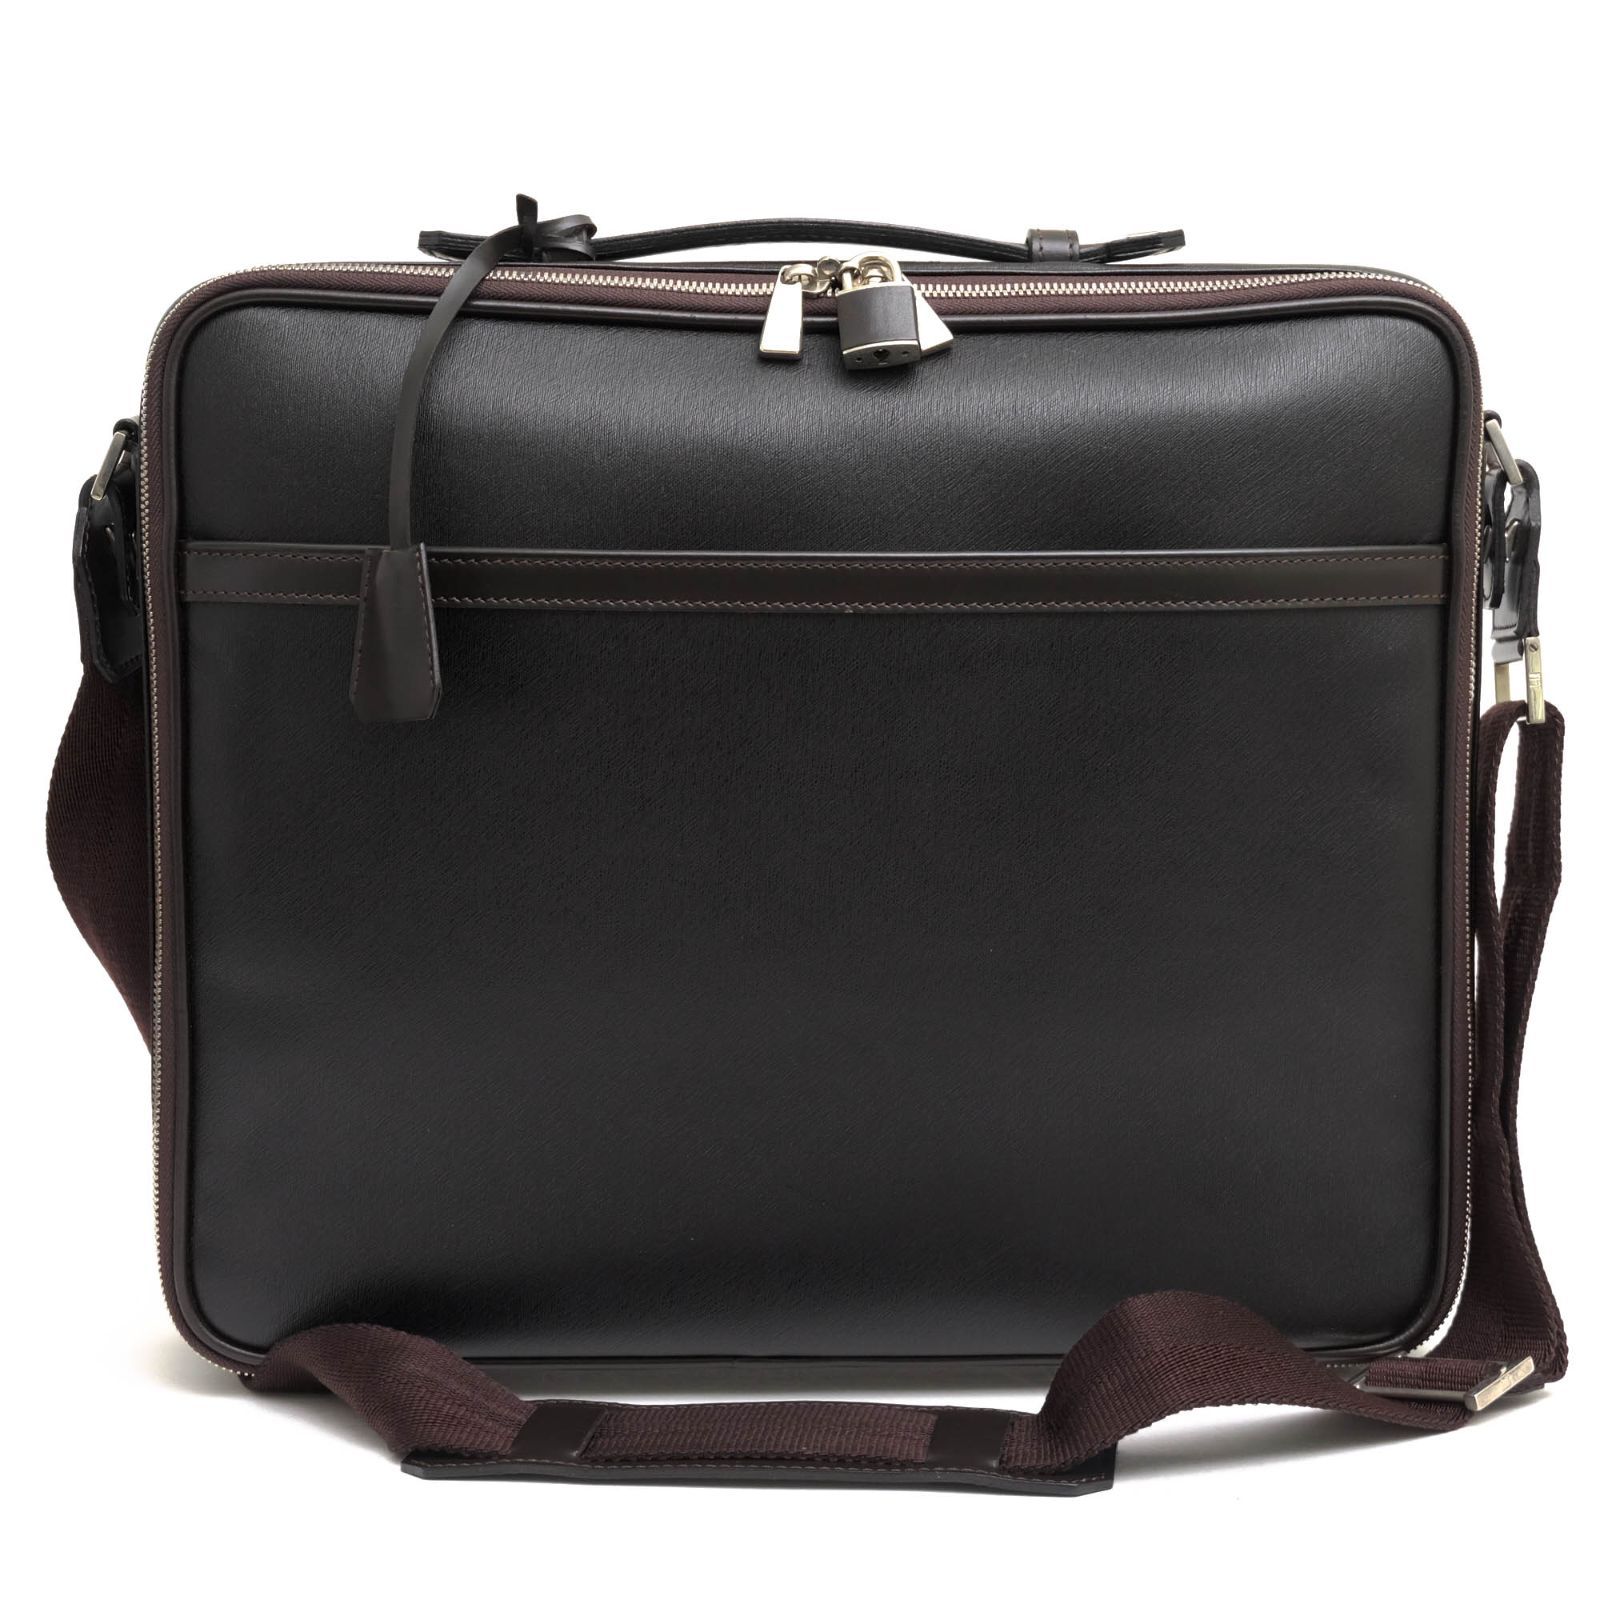 ダンヒル／Dunhill バッグ ブリーフケース ビジネスバッグ 鞄 ビジネス メンズ 男性 男性用レザー 革 本革 ダークブラウン 茶 ブラウン  SIDECAR サイドカー フラップ式